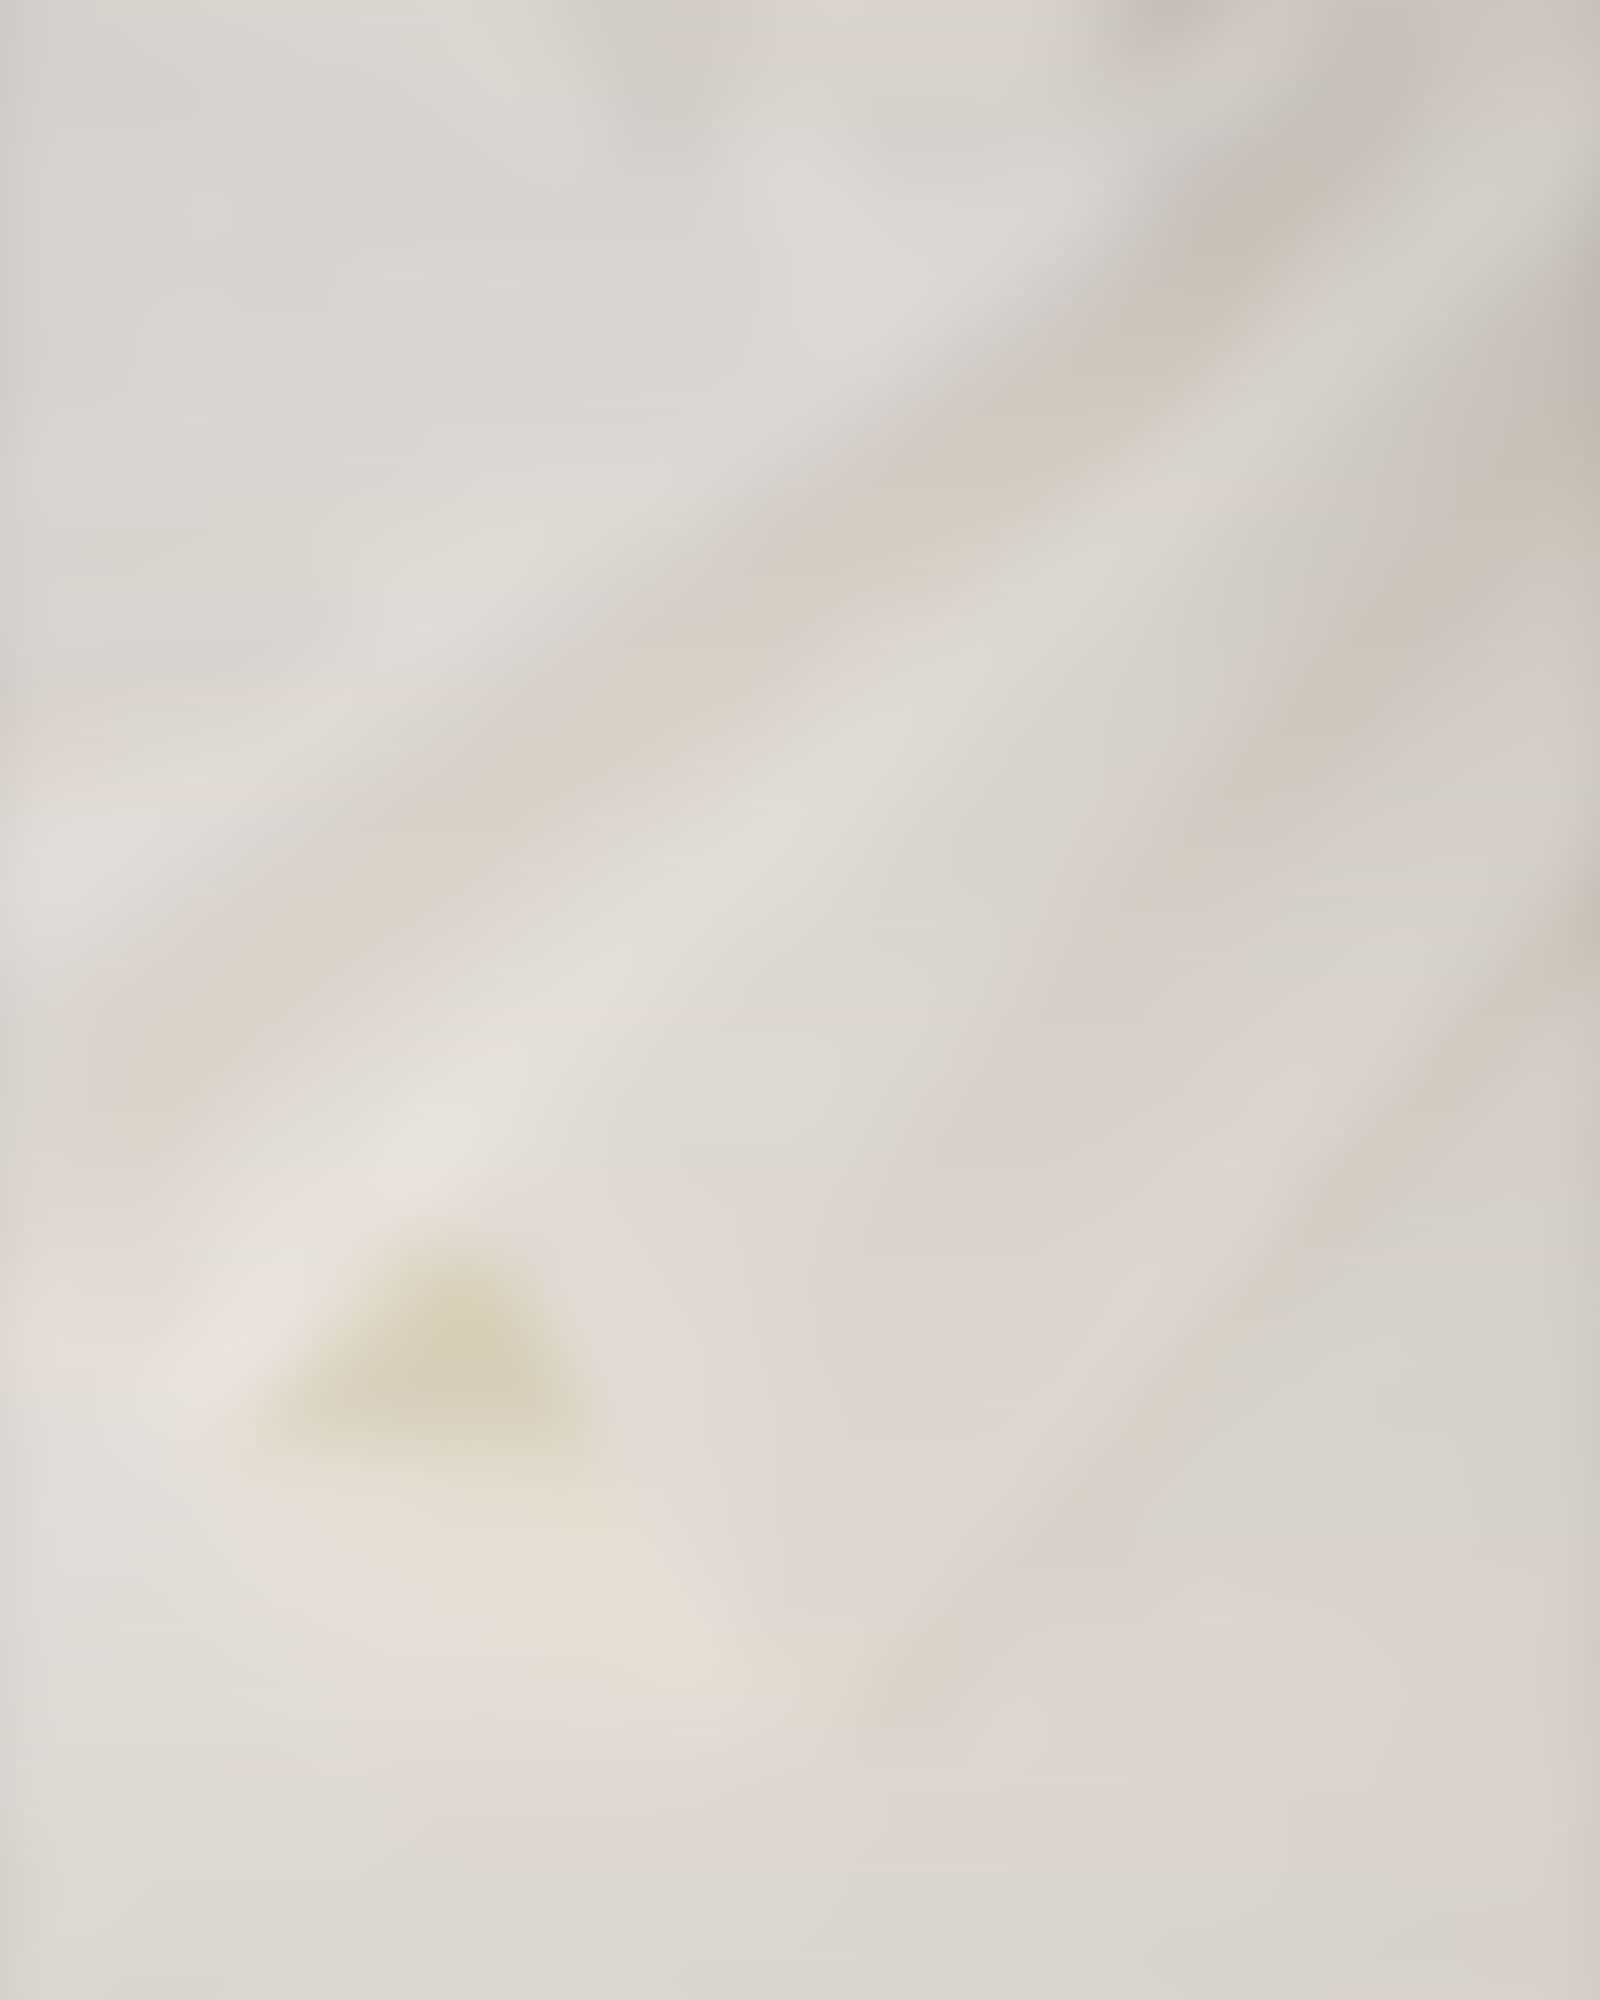 Cawö Heritage 4000 - Farbe: weiß - 600 Handtuch 50x100 cm